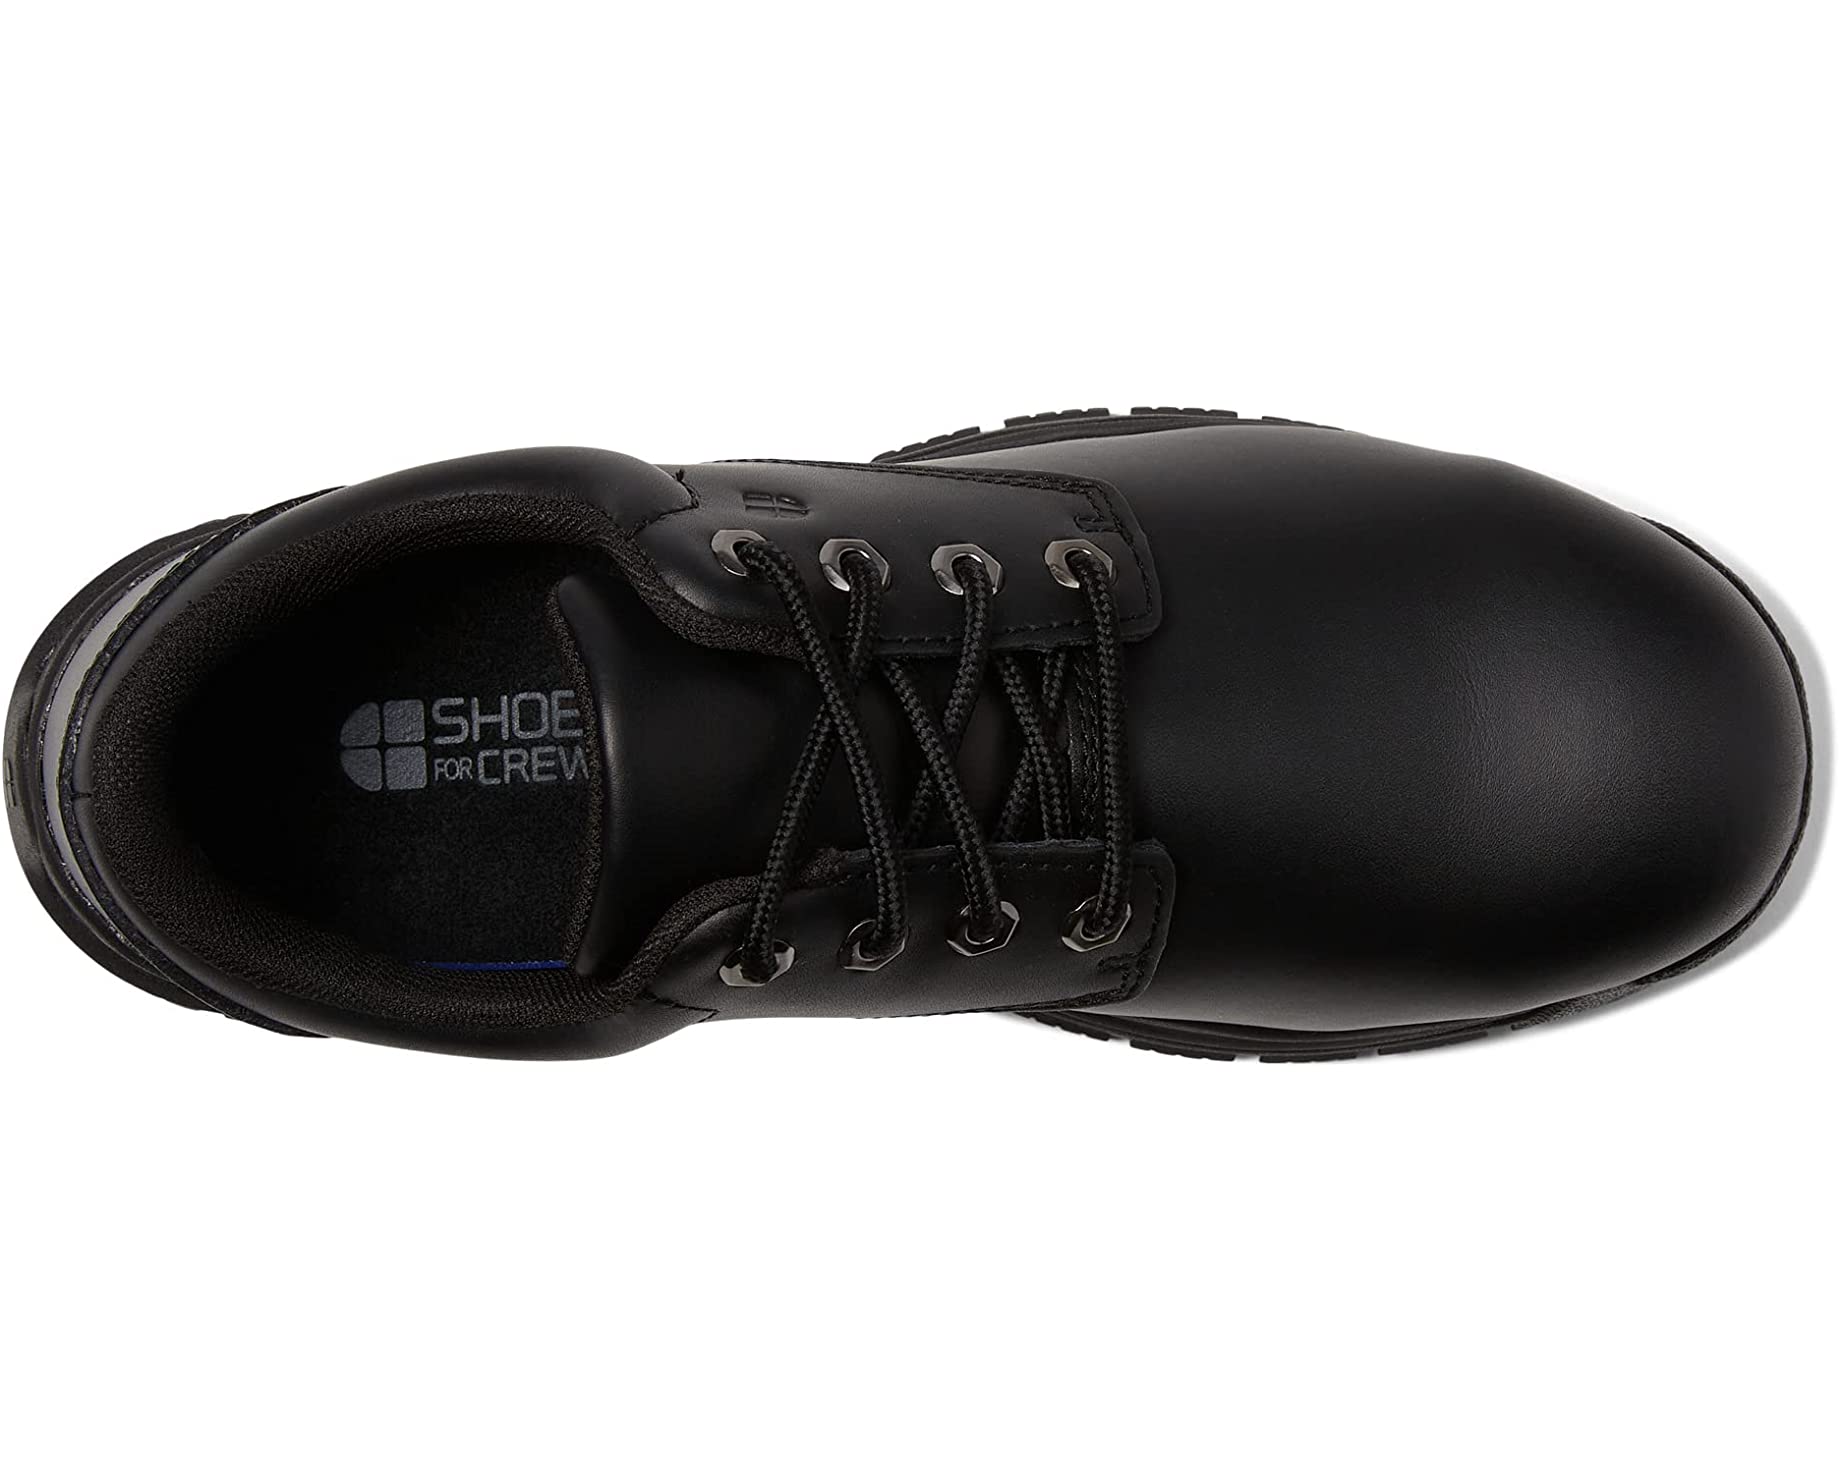 Кроссовки Cade - Steel Toe Shoes for Crews, черный